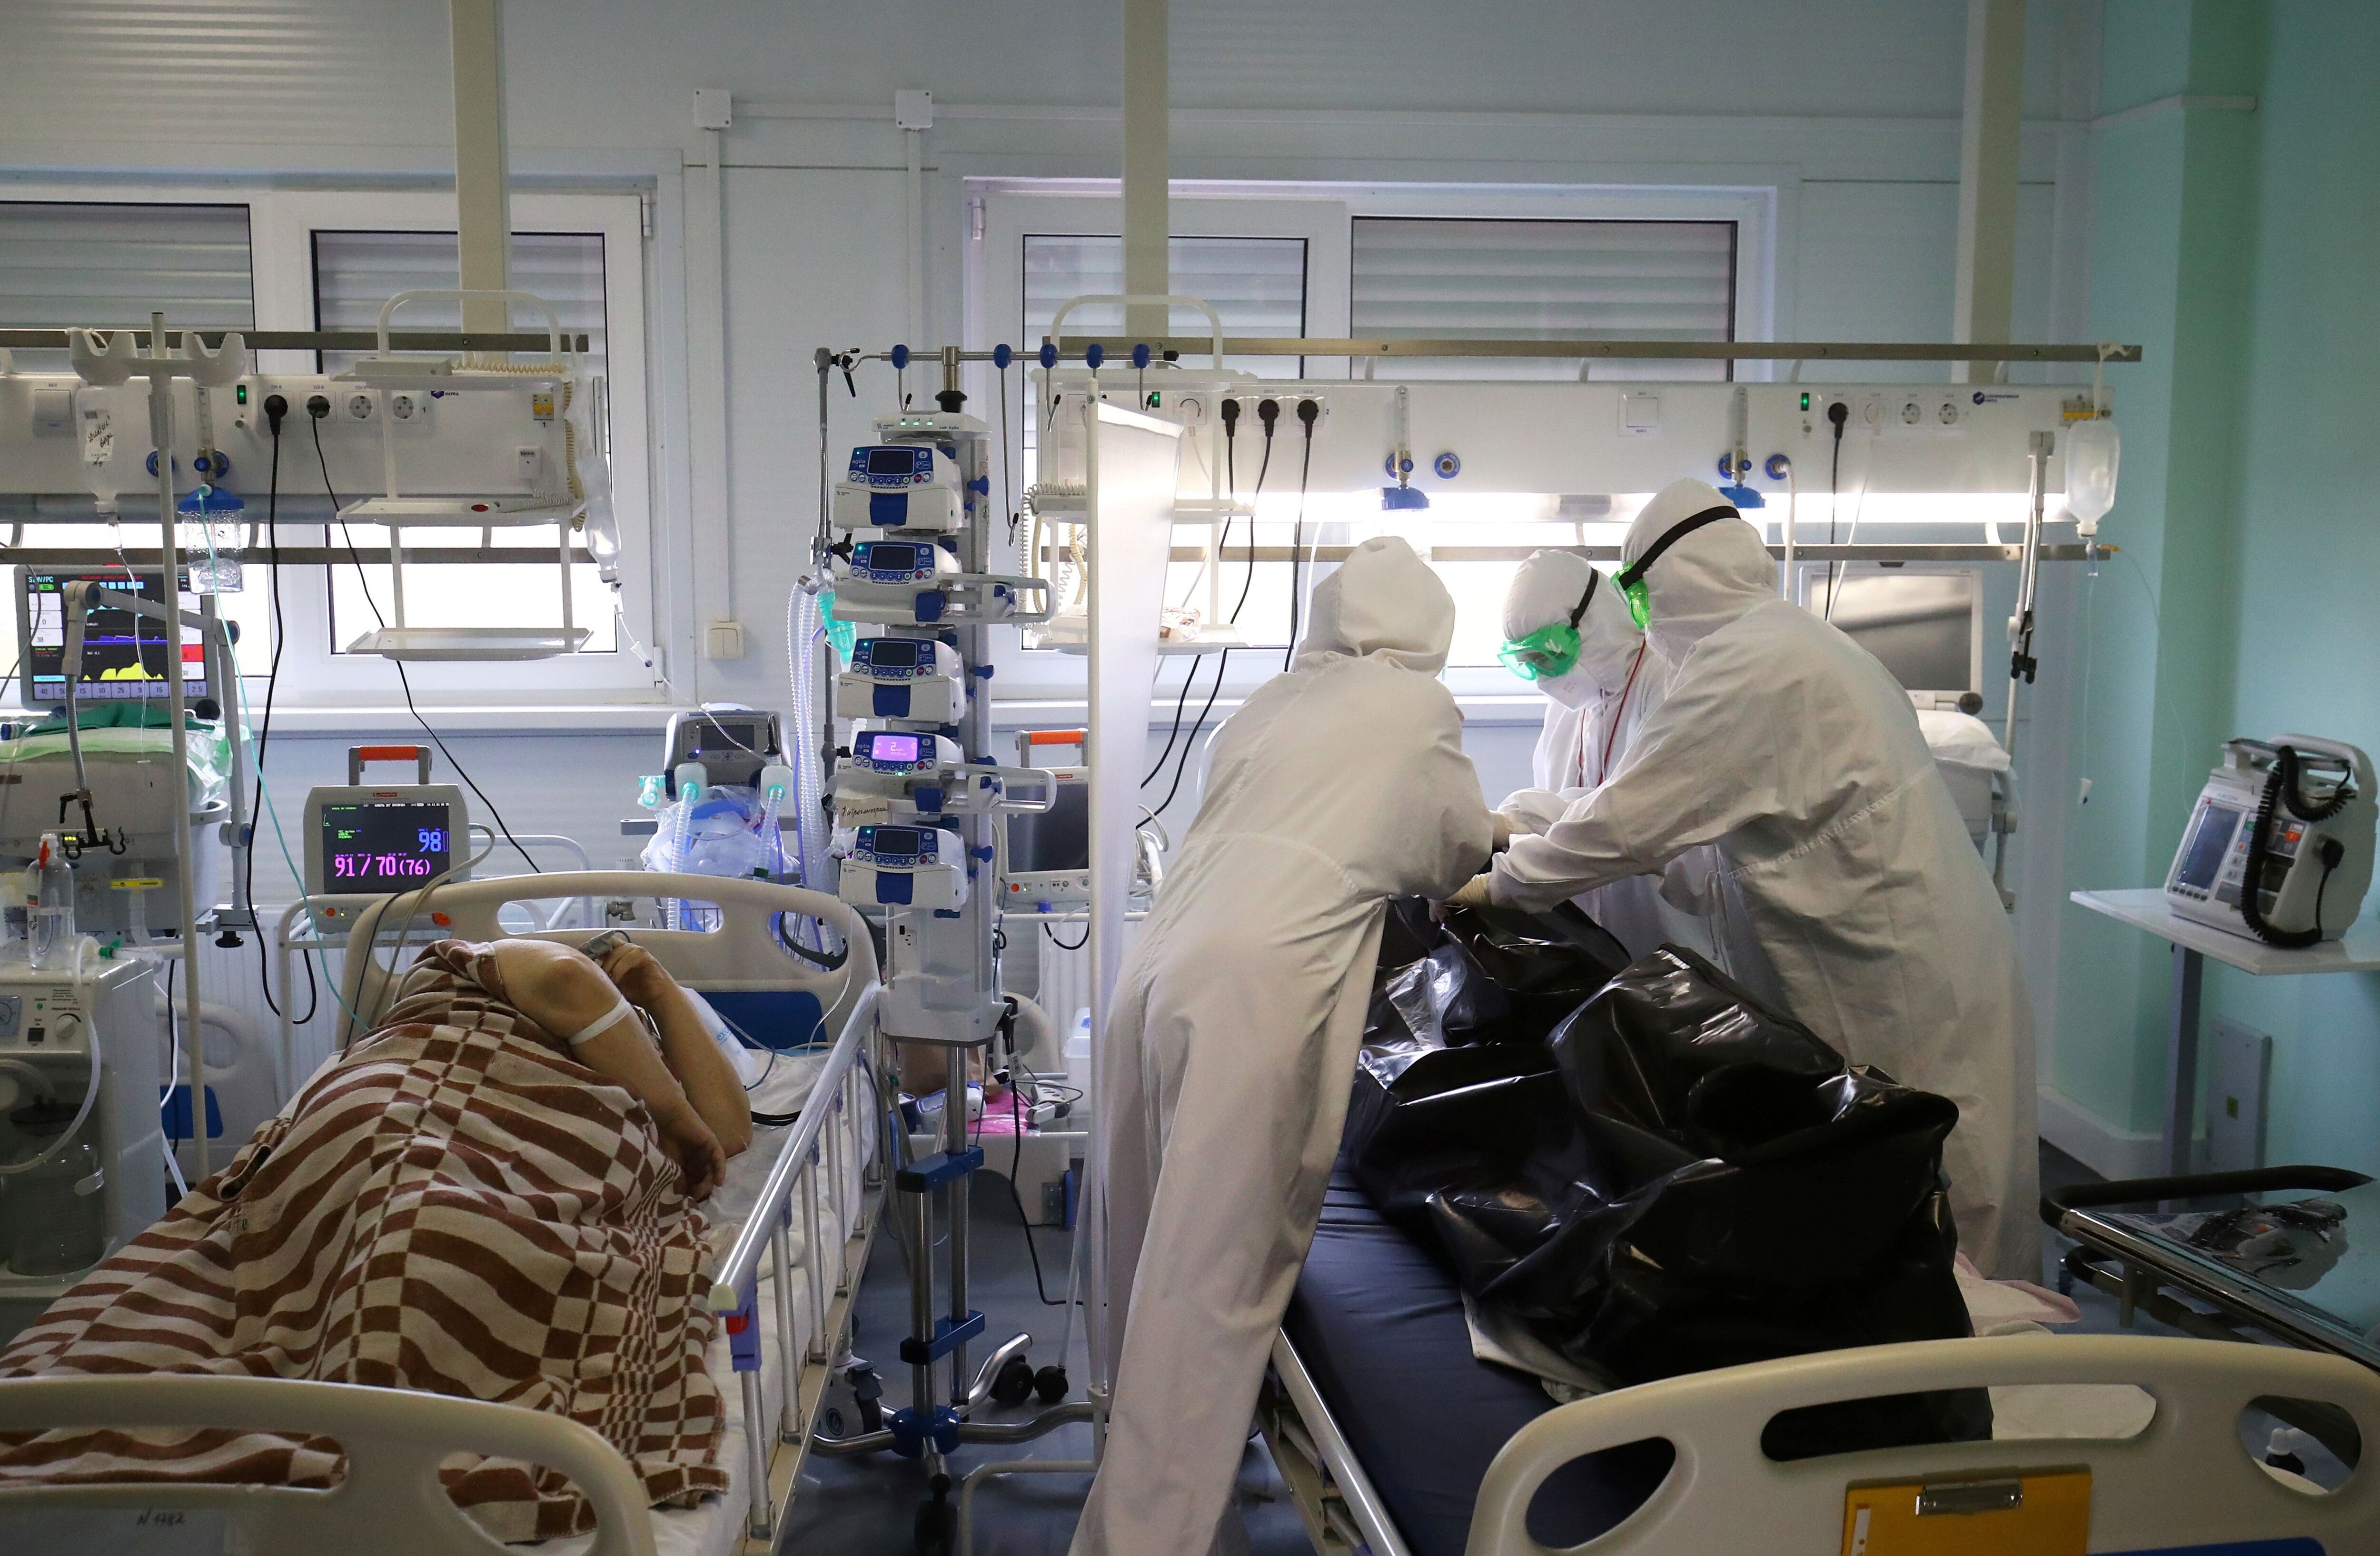 Especialistas médicos colocan en una bolsa el cuerpo de una persona que murió por coronavirus en un hospital local en la ciudad de Kalach-on-Don en la región de Volgogrado, Rusia 14 de noviembre de 2021. REUTERS/Kirill Braga